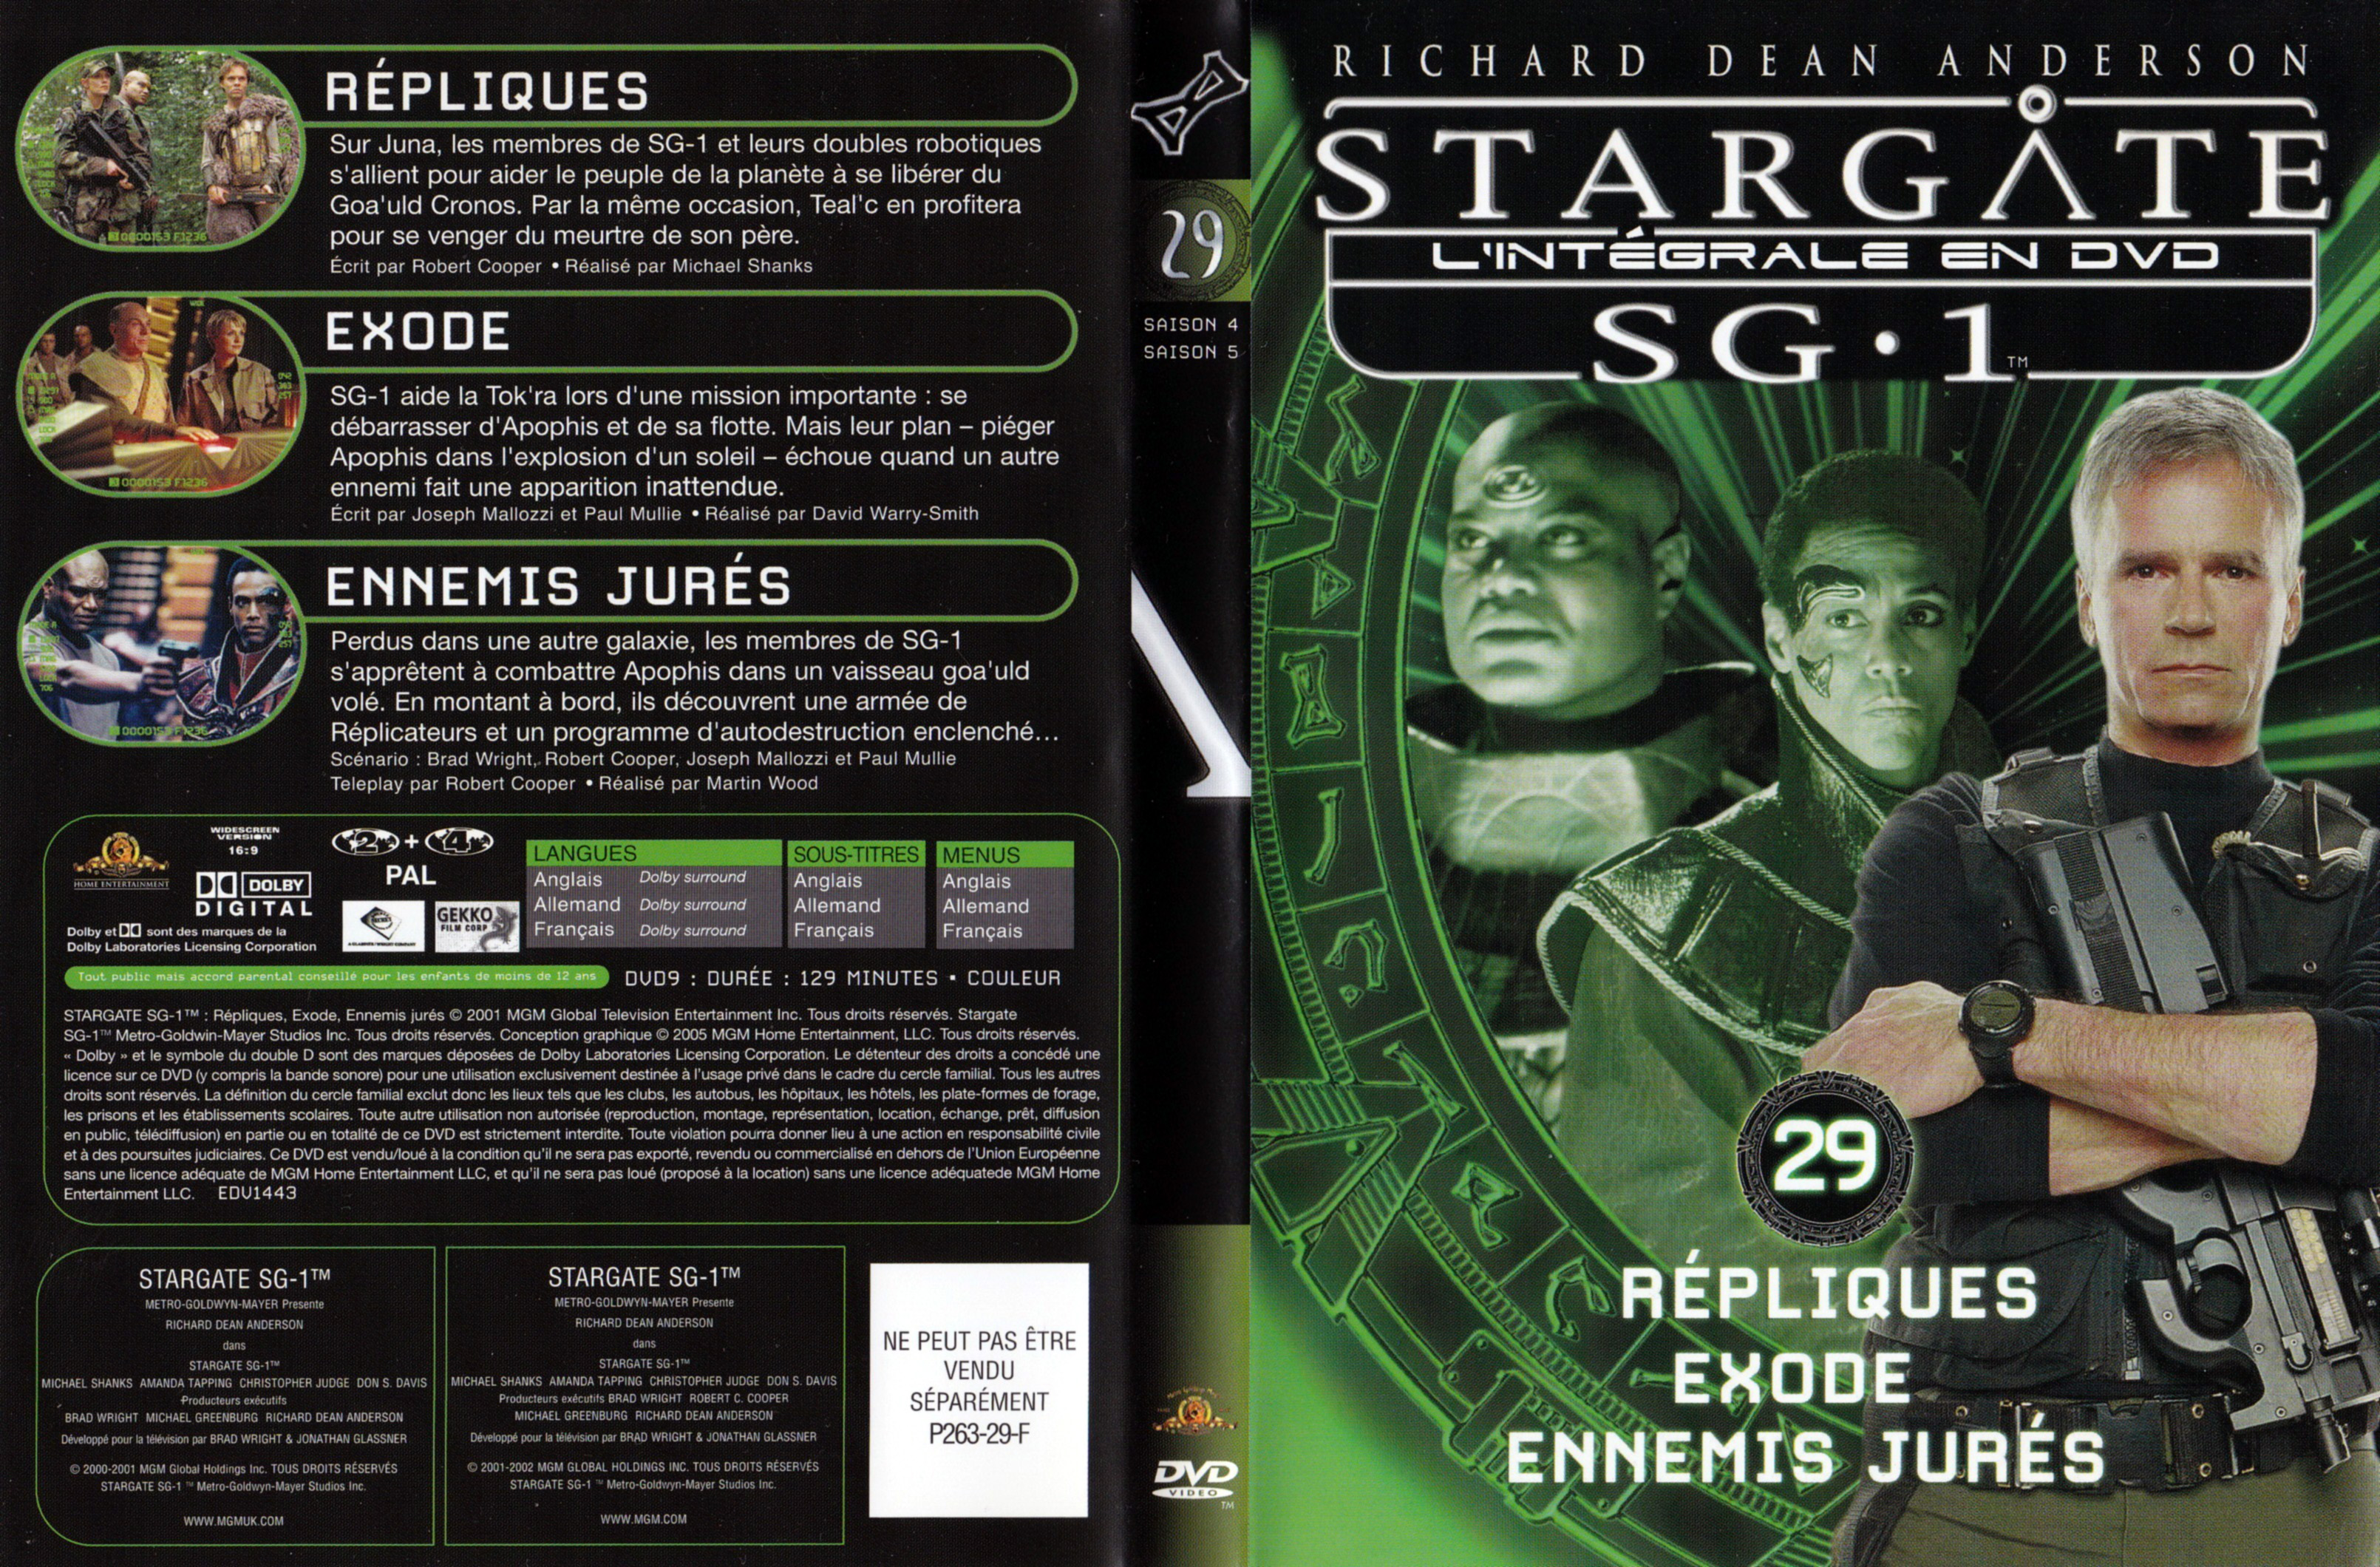 Jaquette DVD Stargate SG1 Intgrale Saison 4-5 vol 29